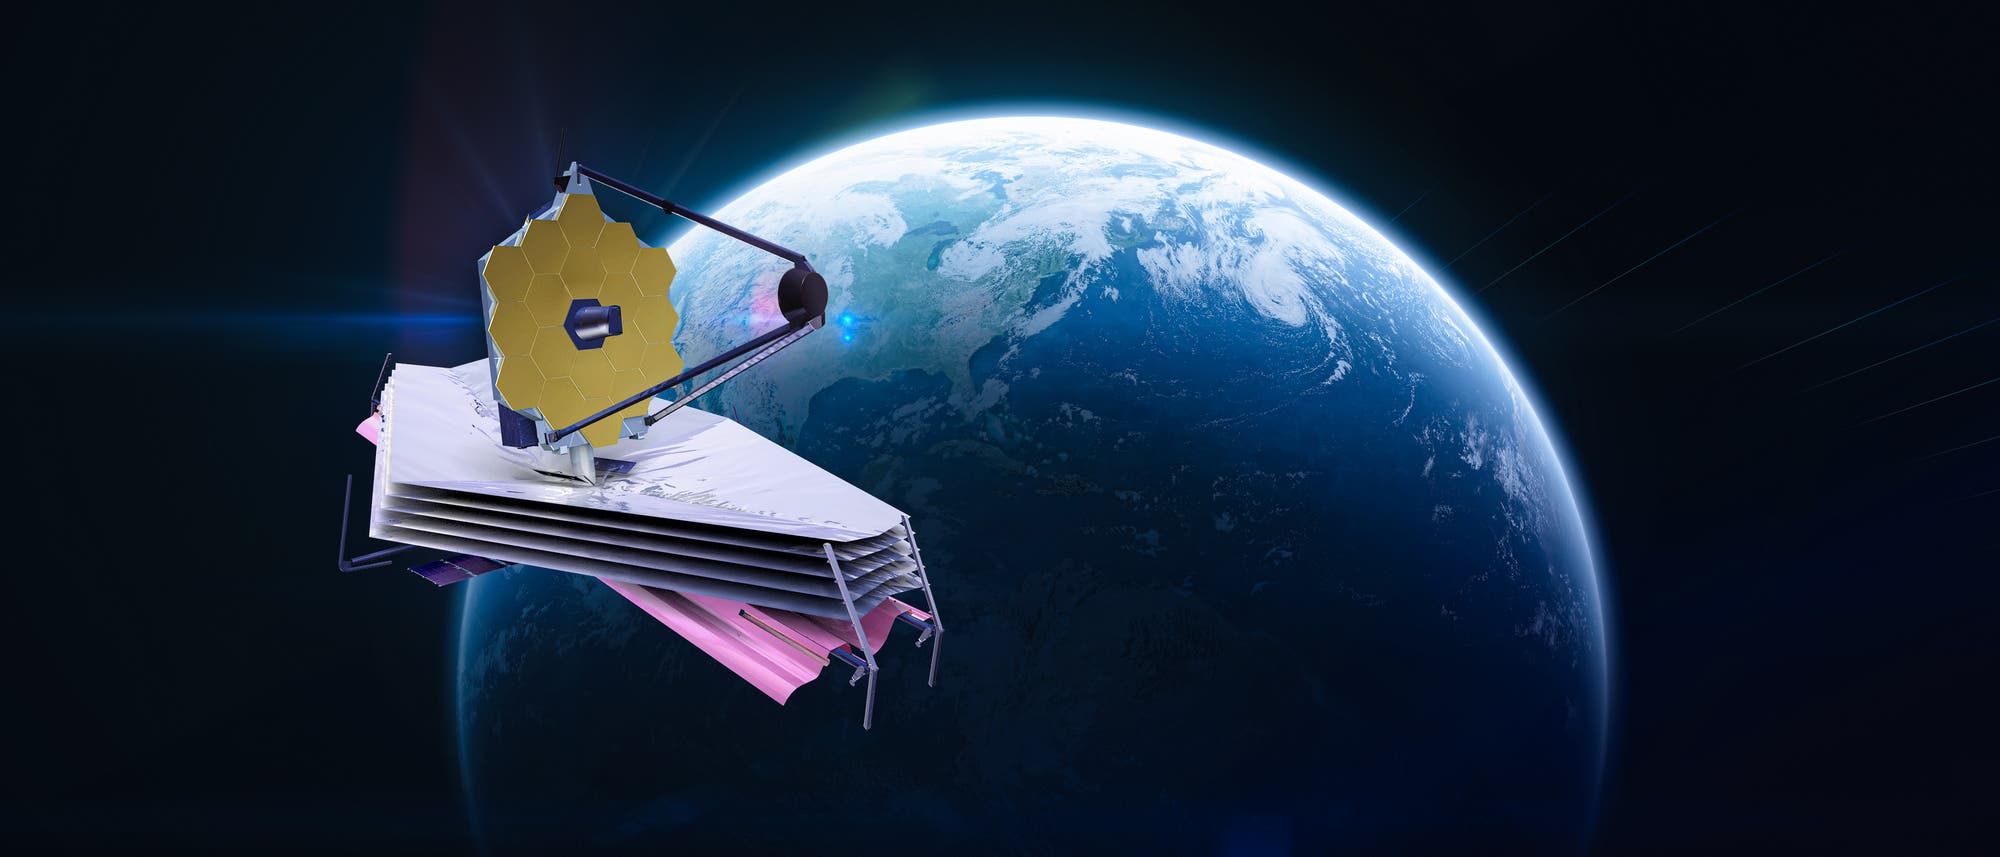 Das James Webb Space Telescope soll weit entfernt von der Erde den Kosmos erforschen (Simulation).